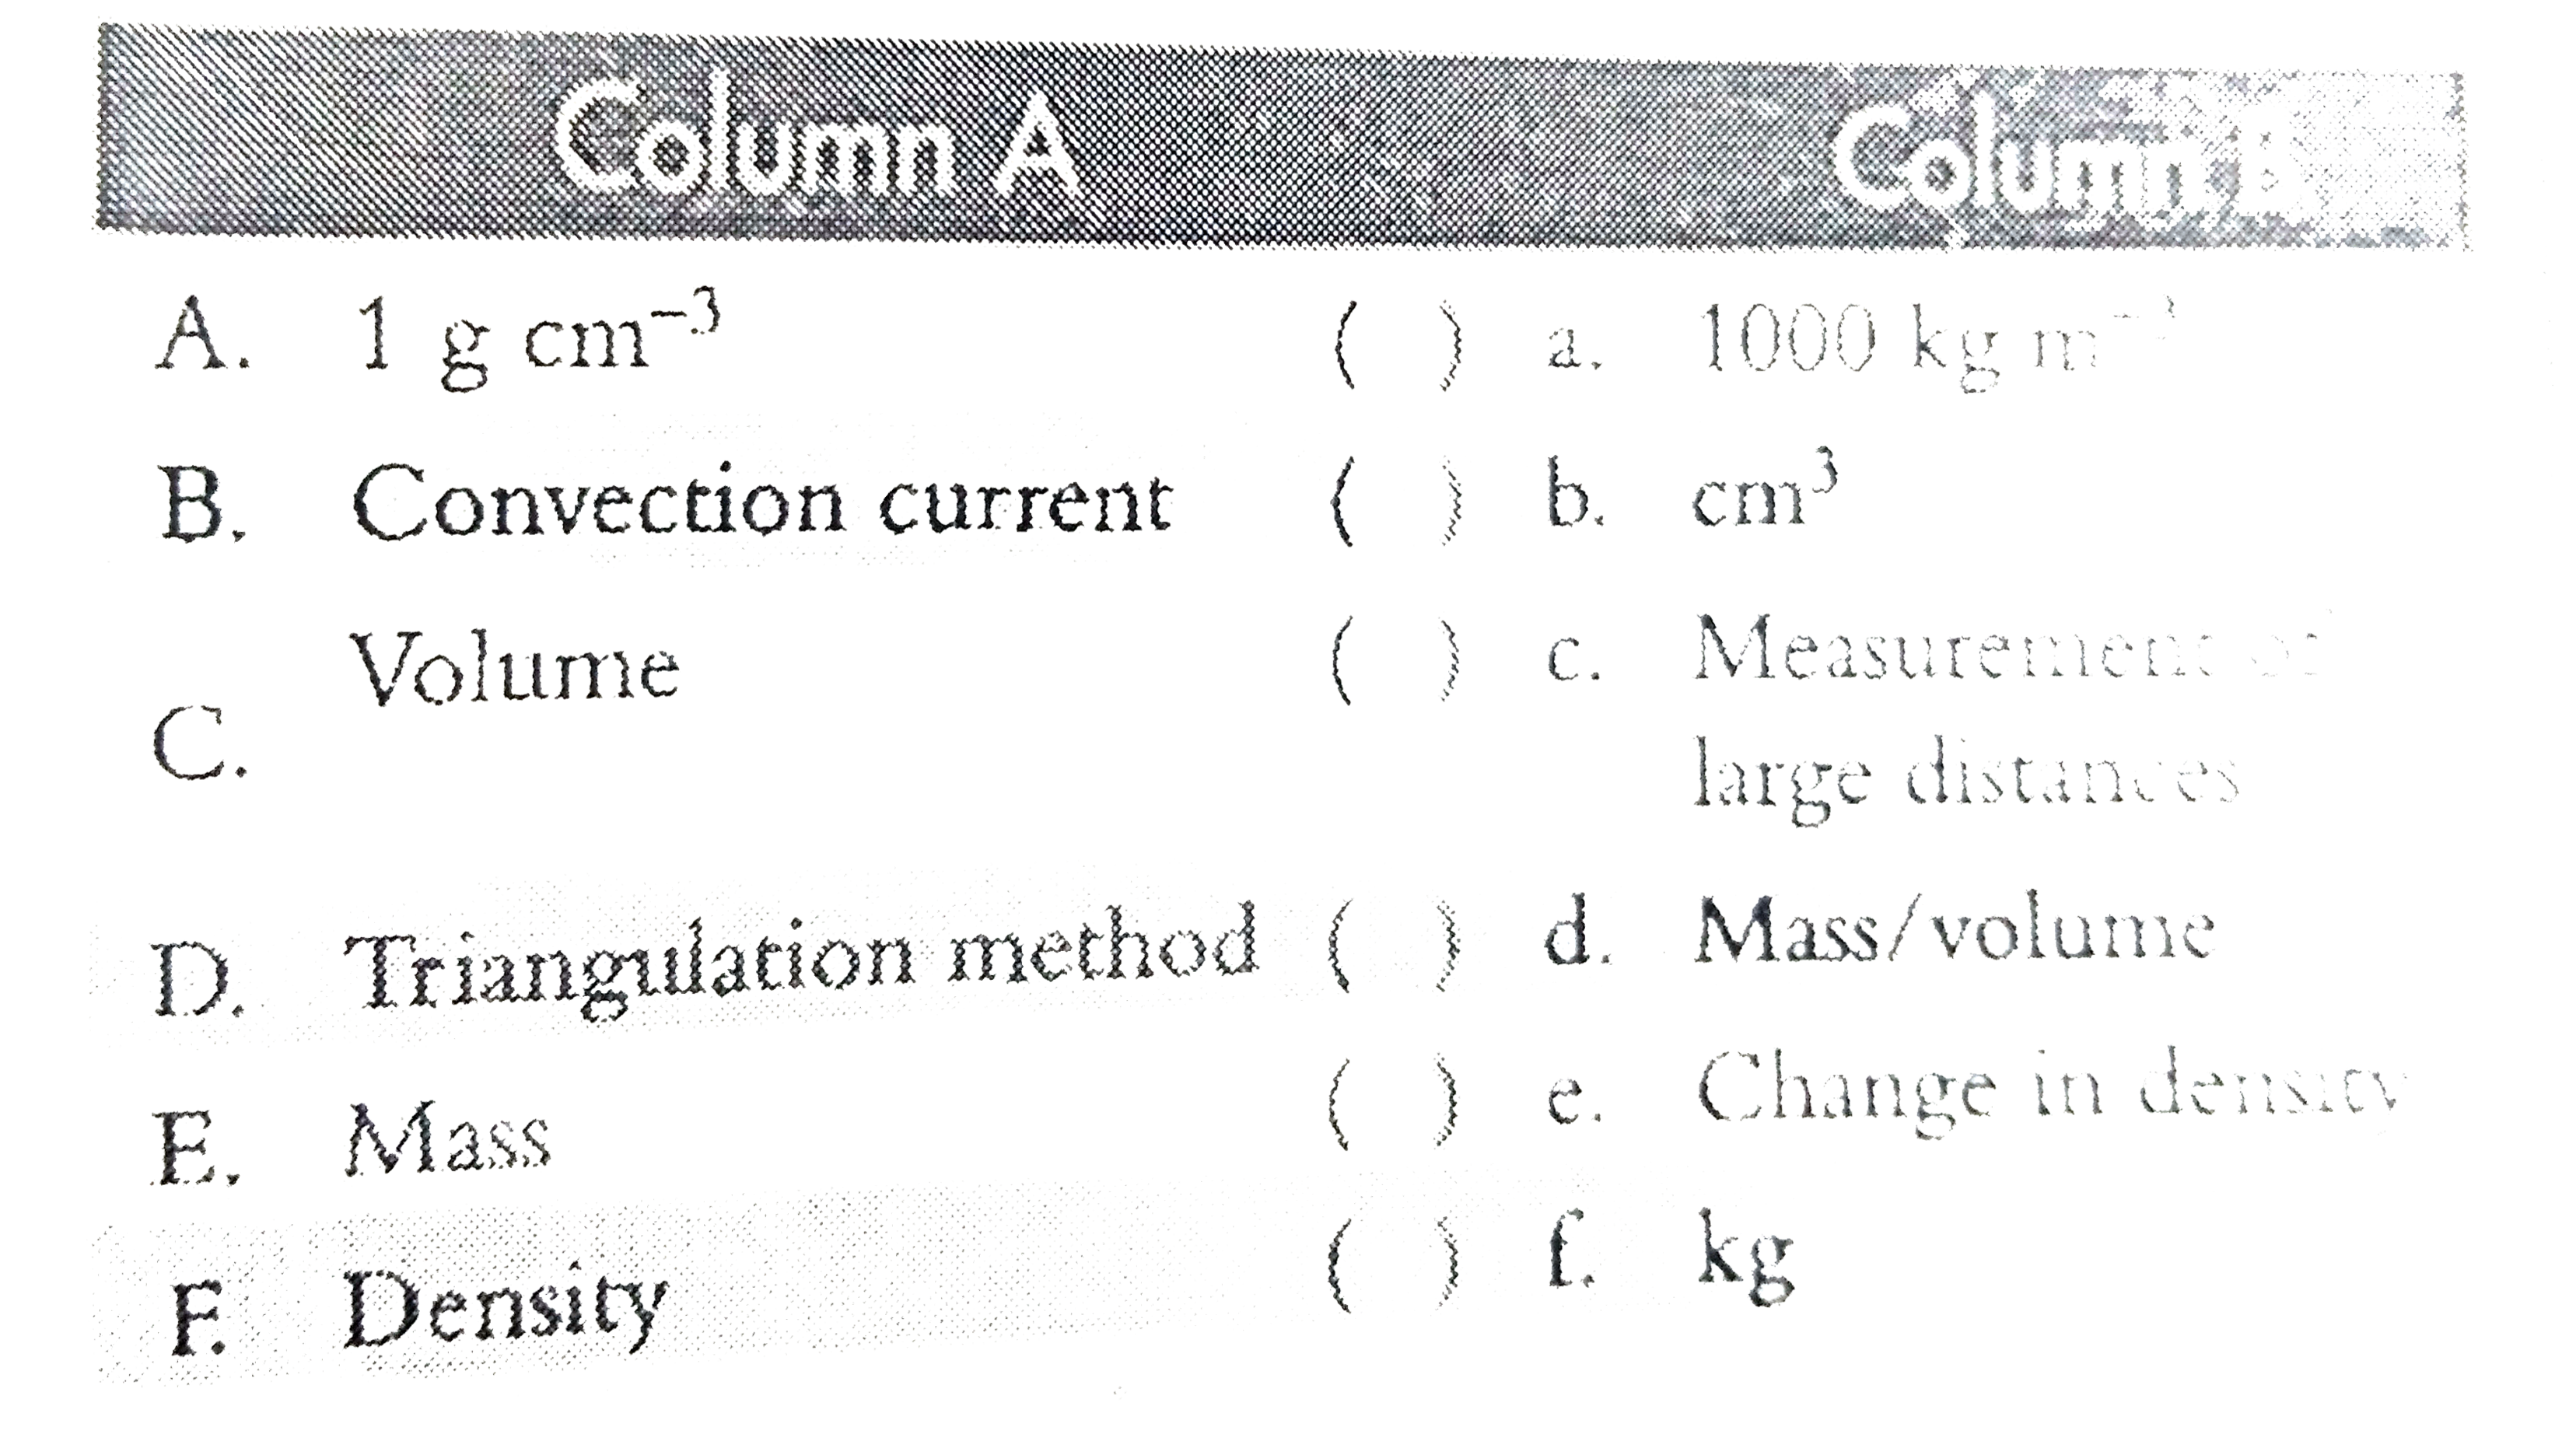 Match columns